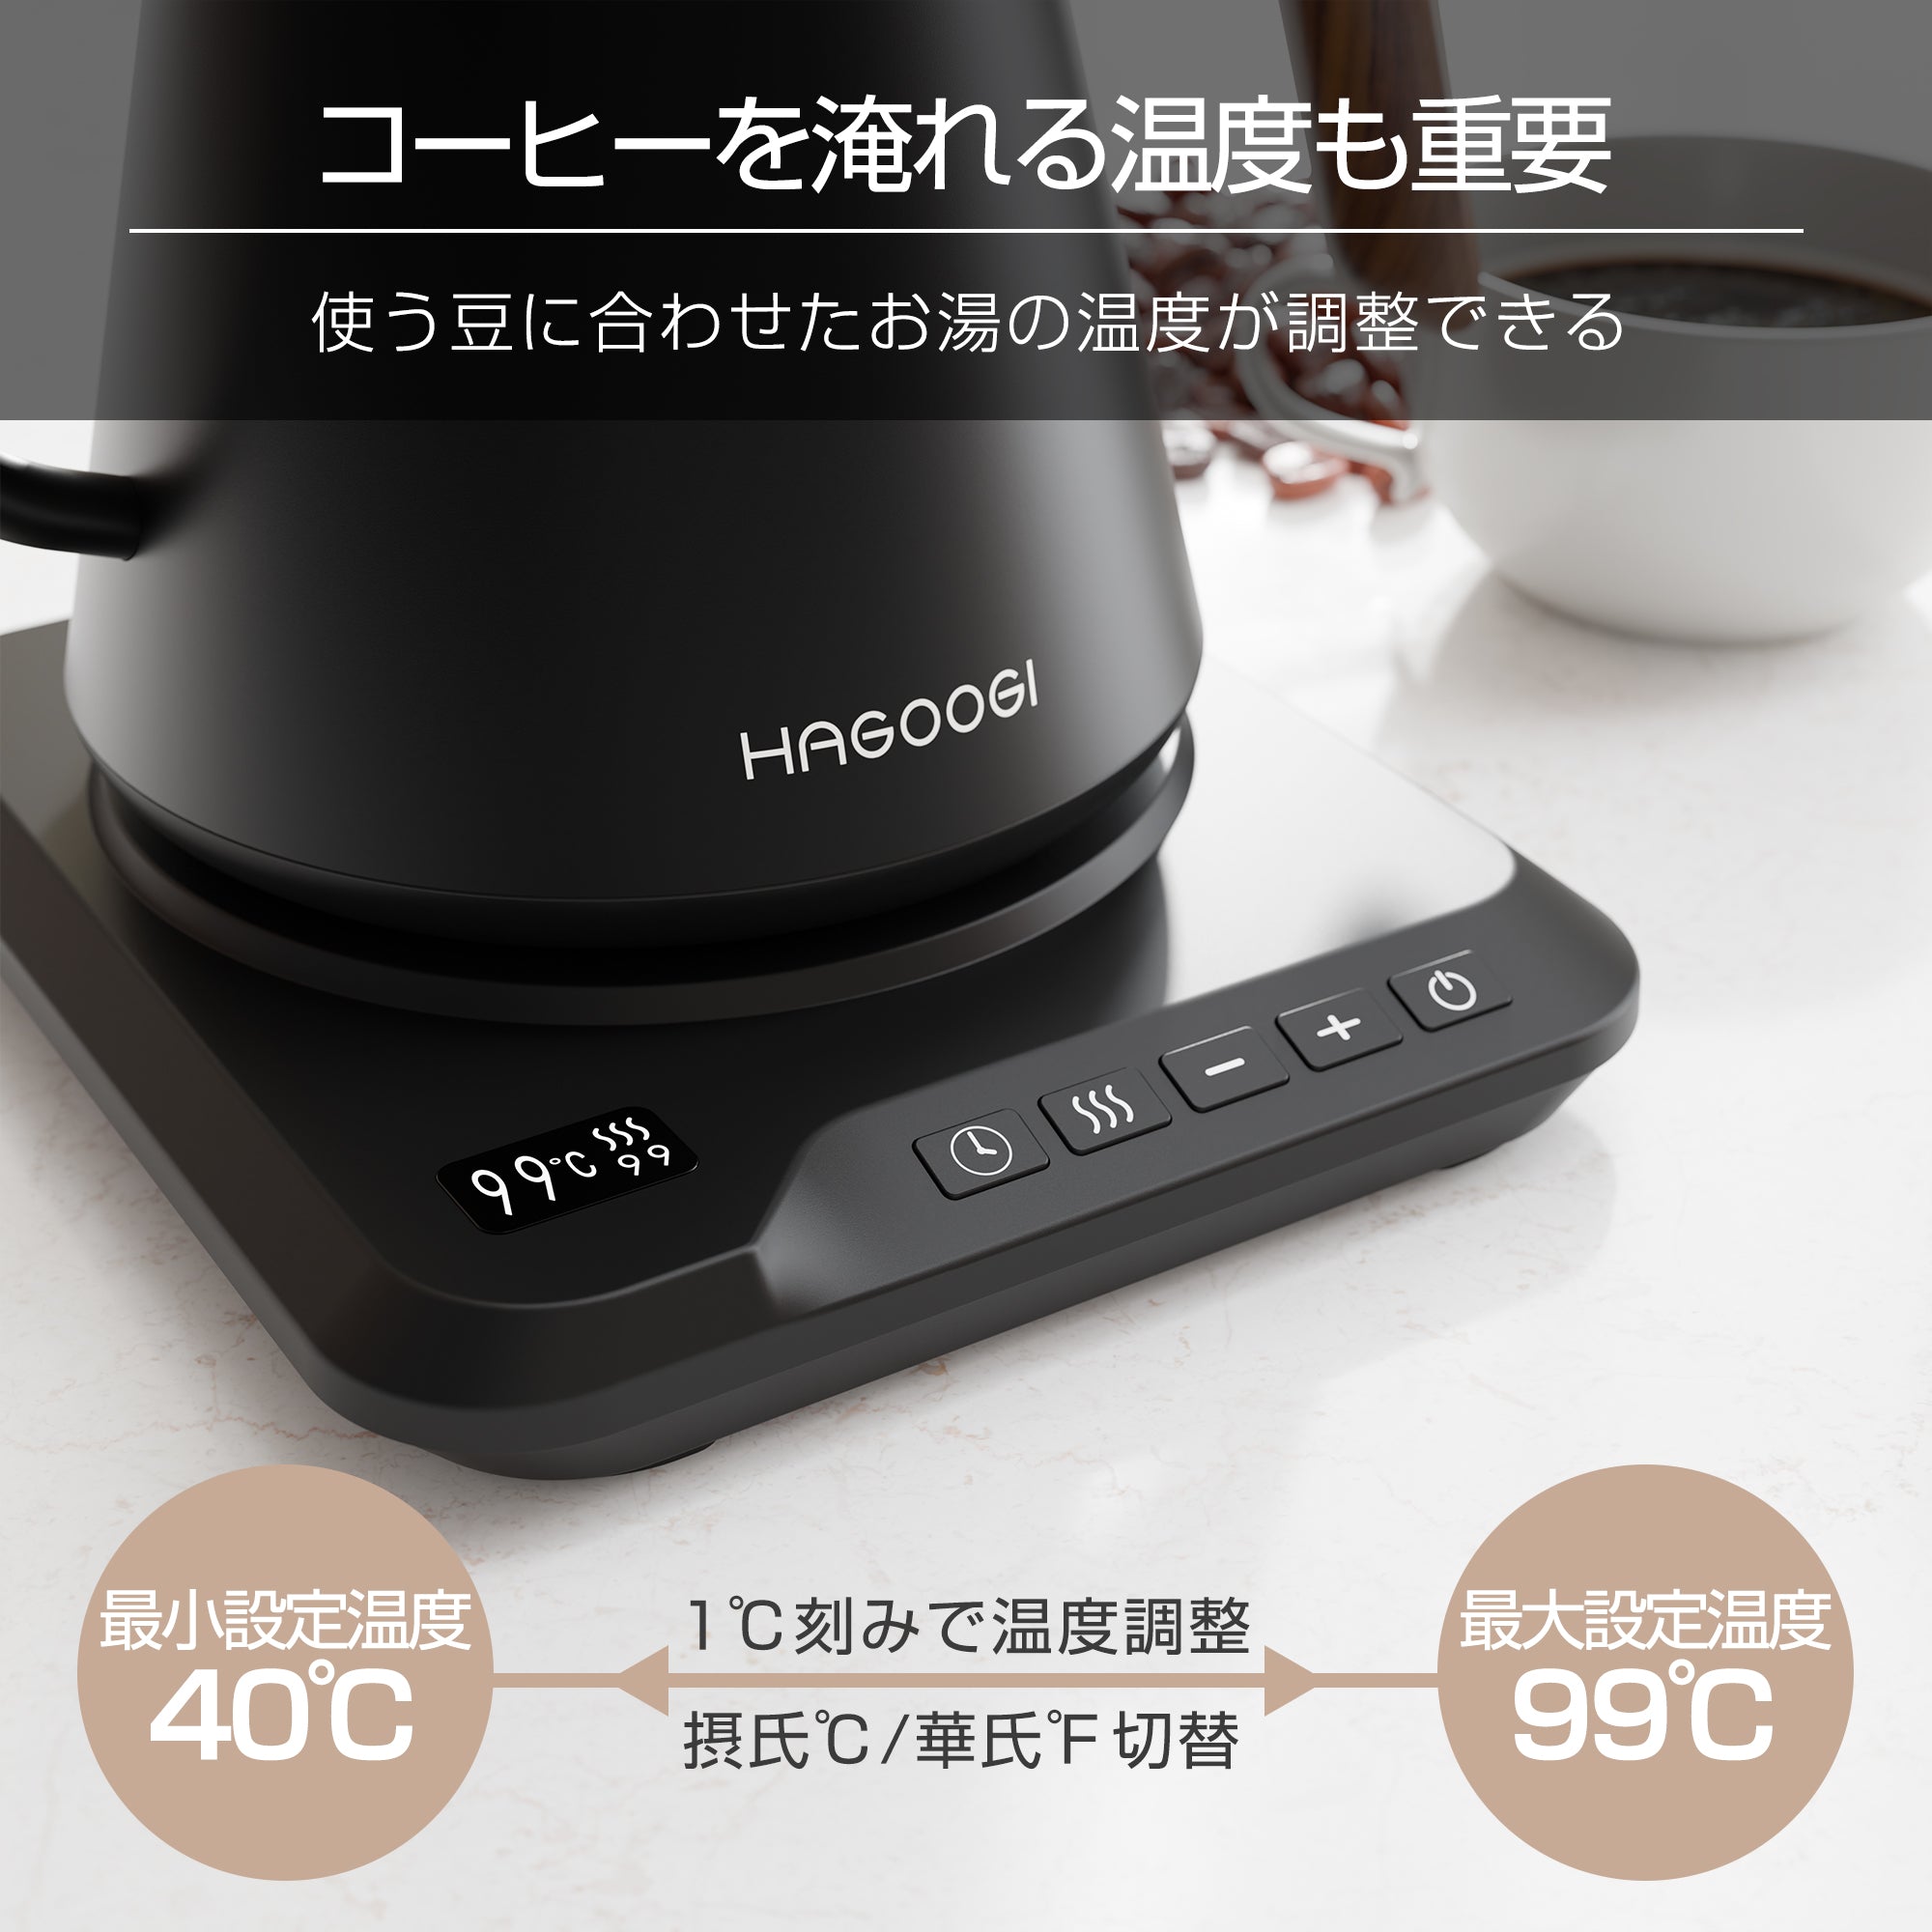 HAGOOGI(ハゴオギ)  電気ケトル 1.0L  コーヒー ドリップケトル 温度設定 最大99℃ 120分自動保温 ドリップタイマー機能搭載 おしゃれ 保温ポット